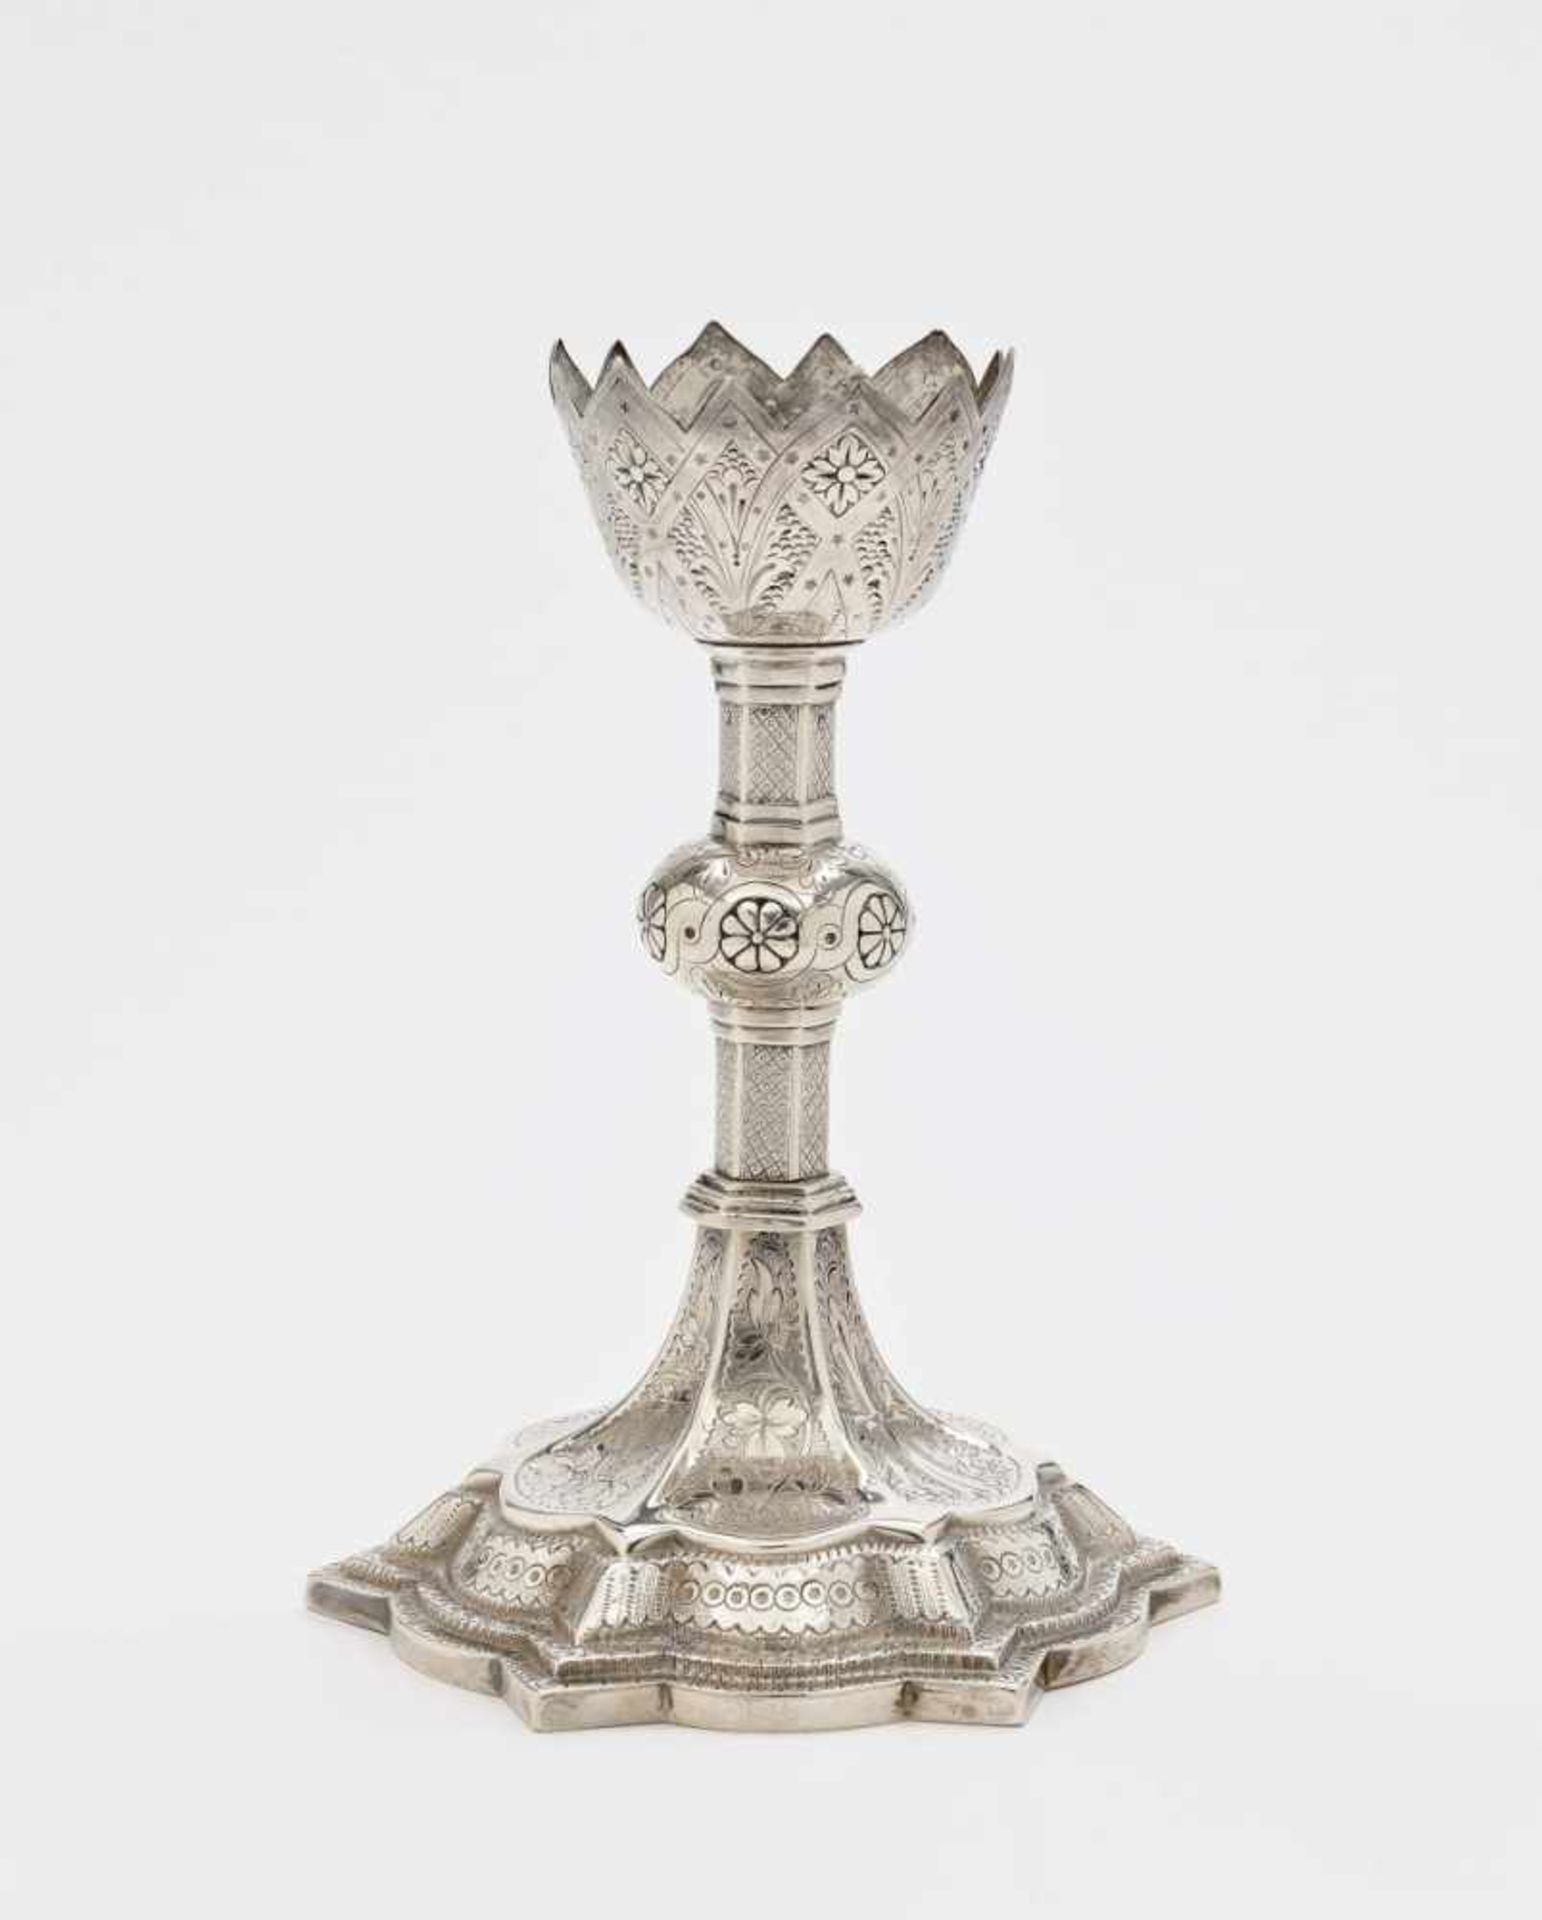 Kerzenleuchter Dublin, 1876/1877, Samuel Le Bass Silber. Sechsfach facettierter Schaft mit Nodus auf